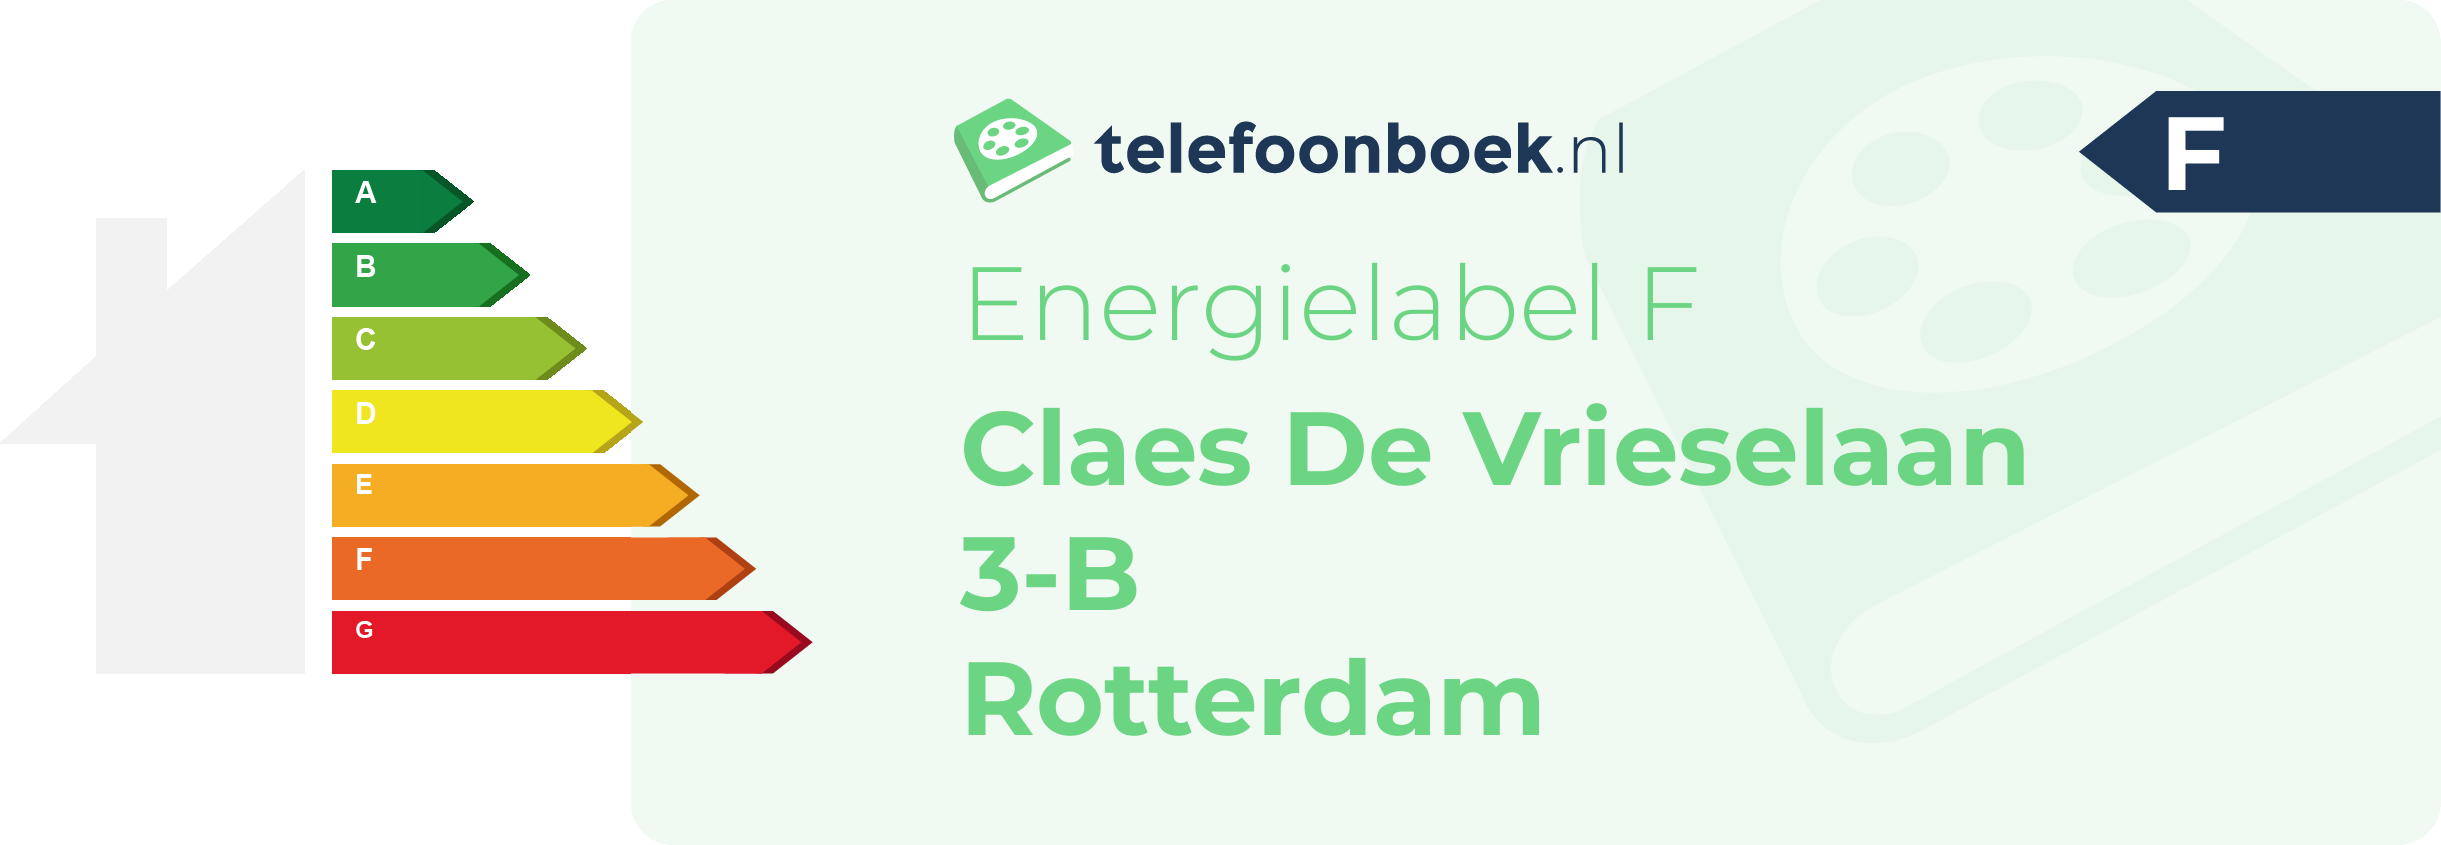 Energielabel Claes De Vrieselaan 3-B Rotterdam